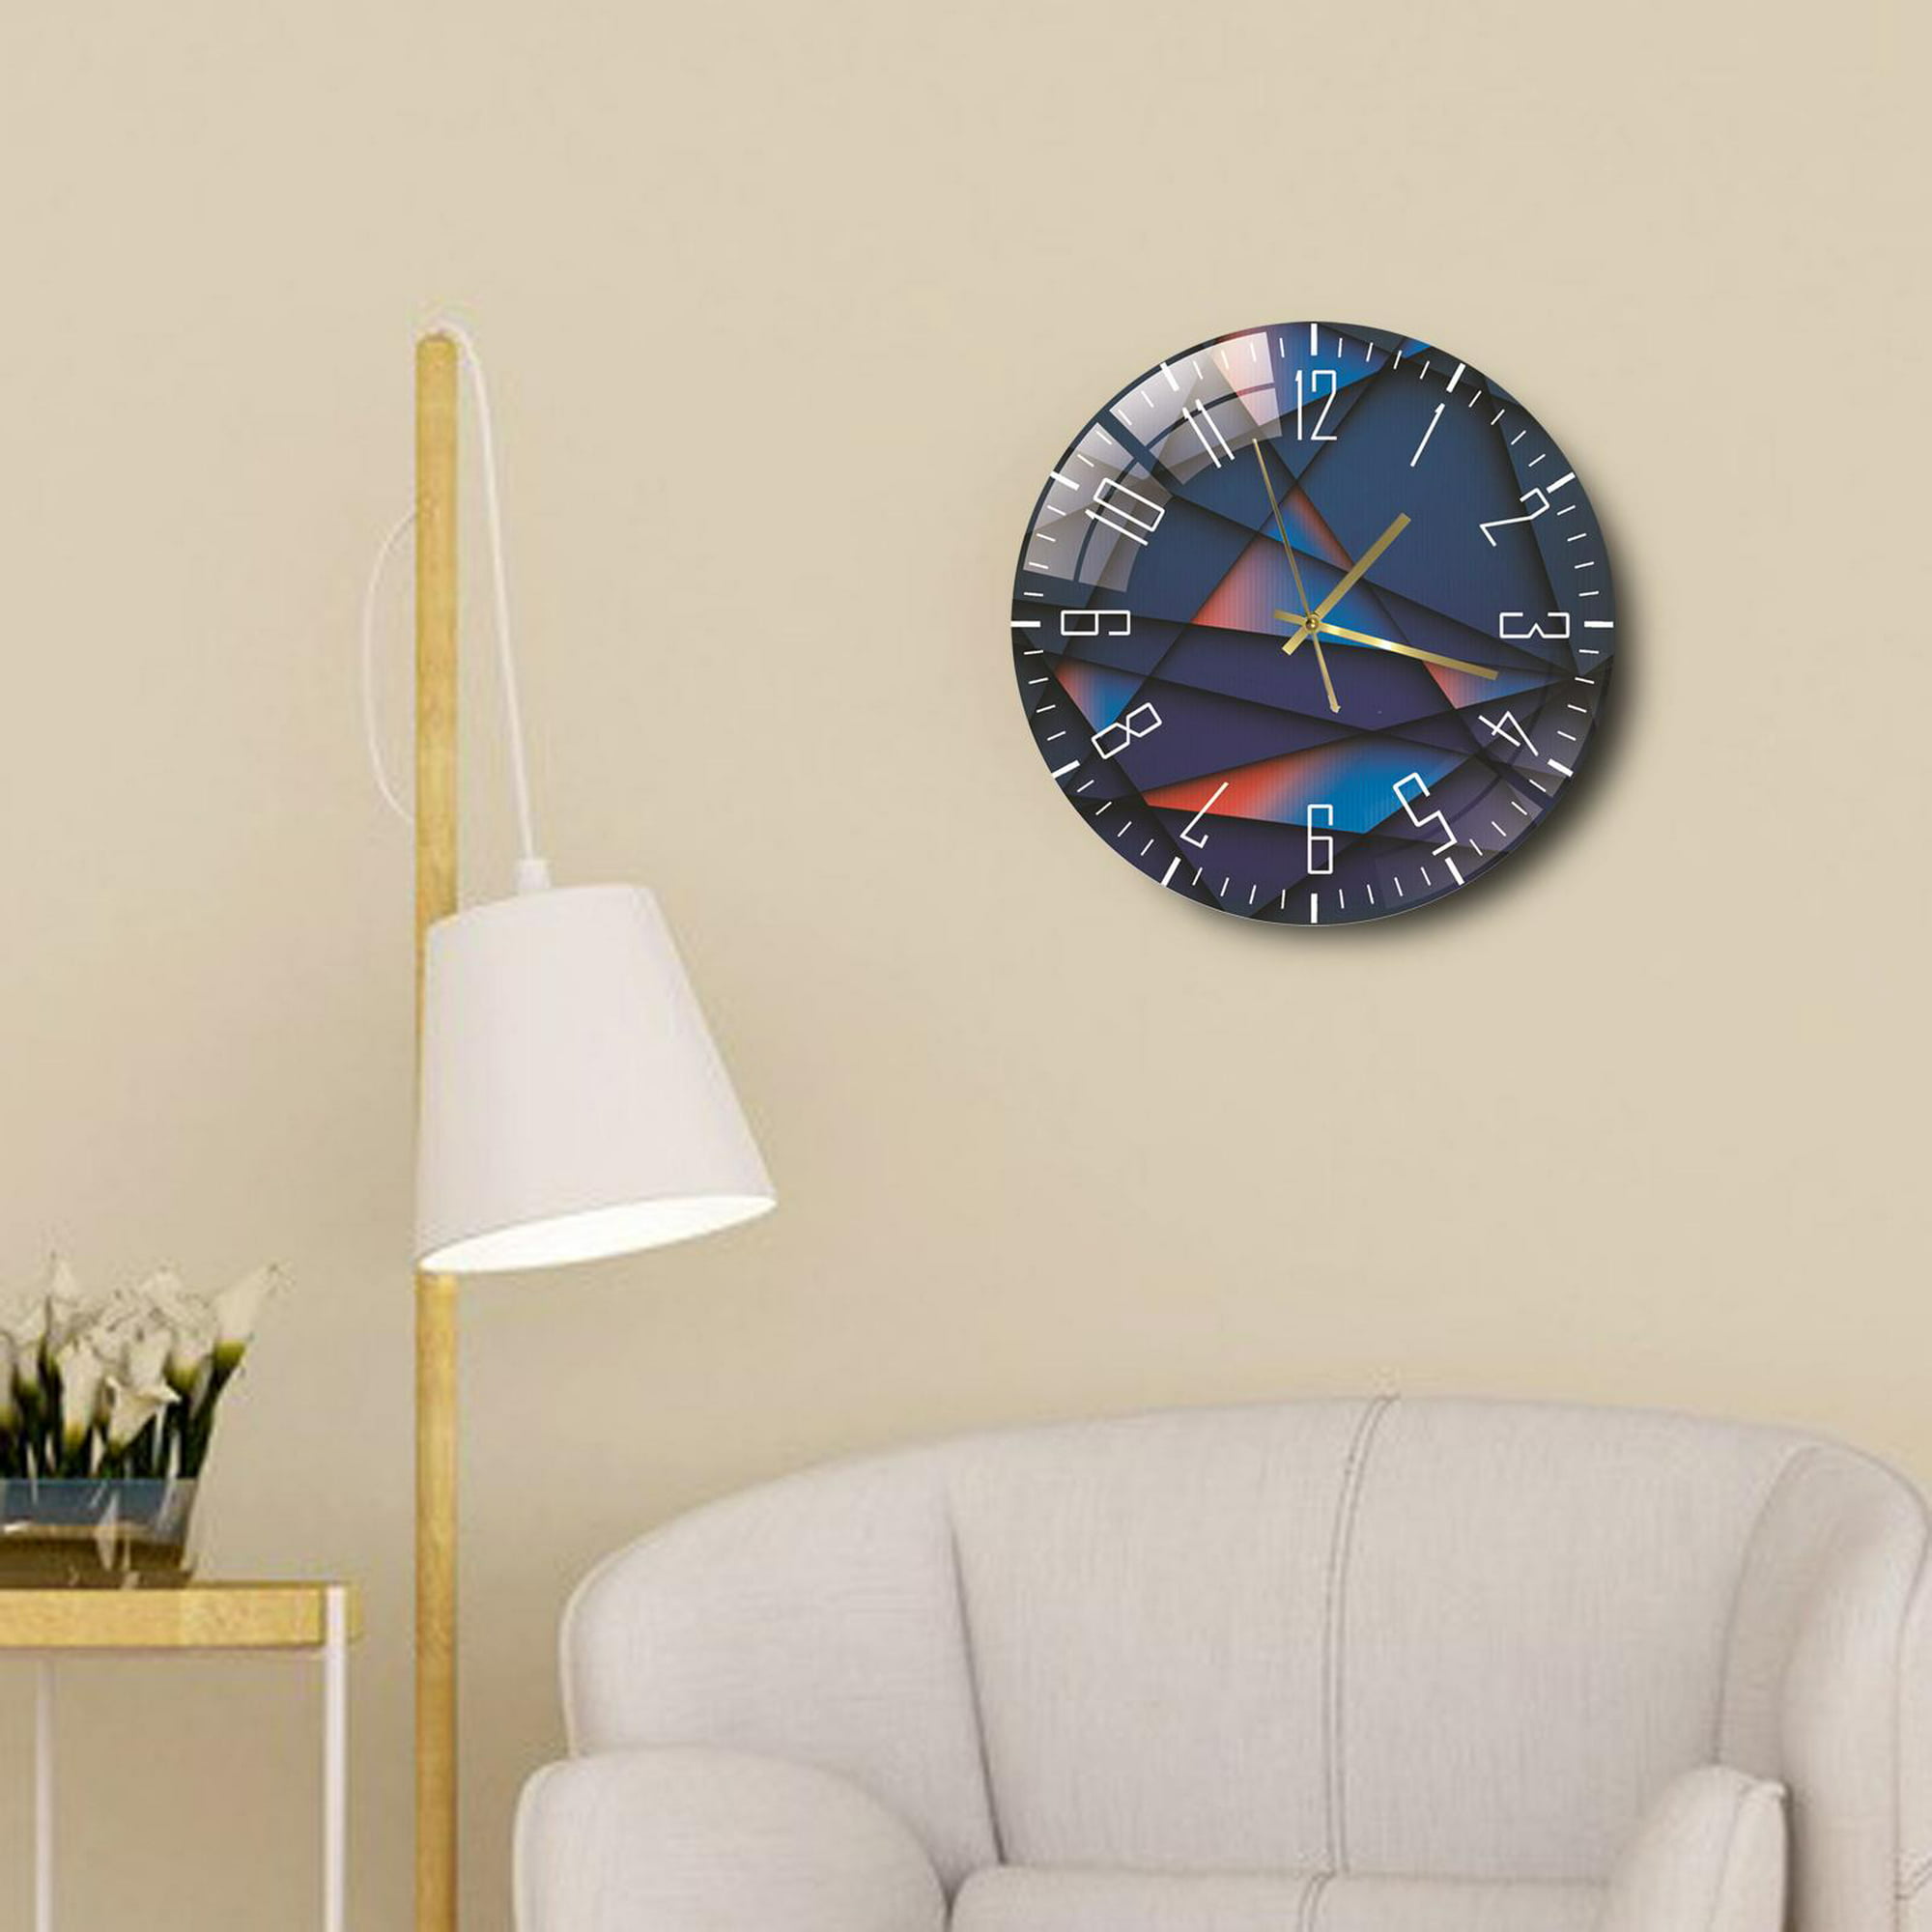 Relojes de pared grandes de metal creativo para la decoración de la sala de  estar, con grandes números arábigos que cuelgan relojes grandes para la